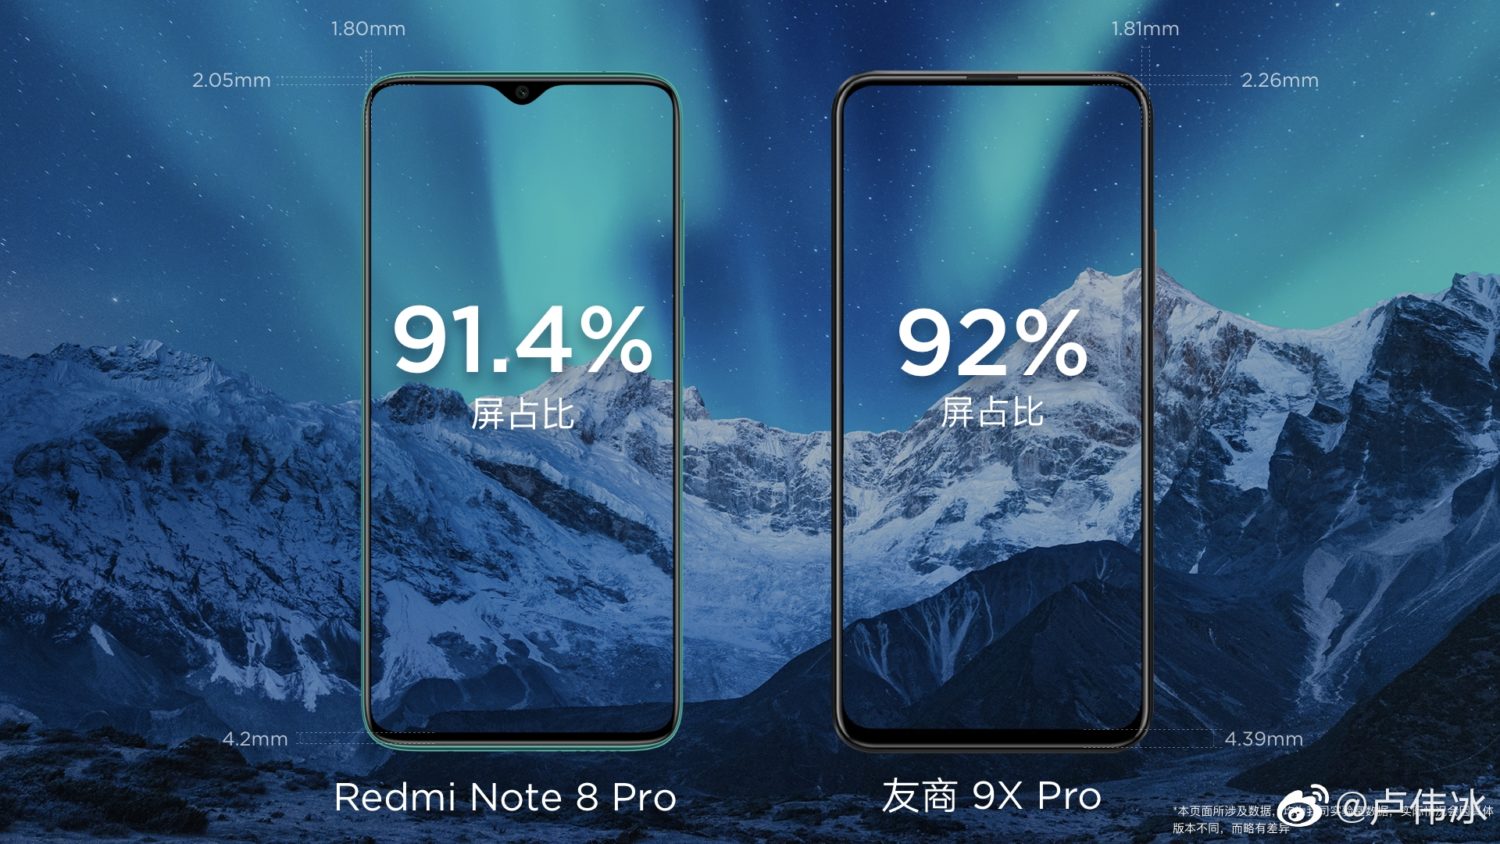 Honor 9x Redmi Note 8